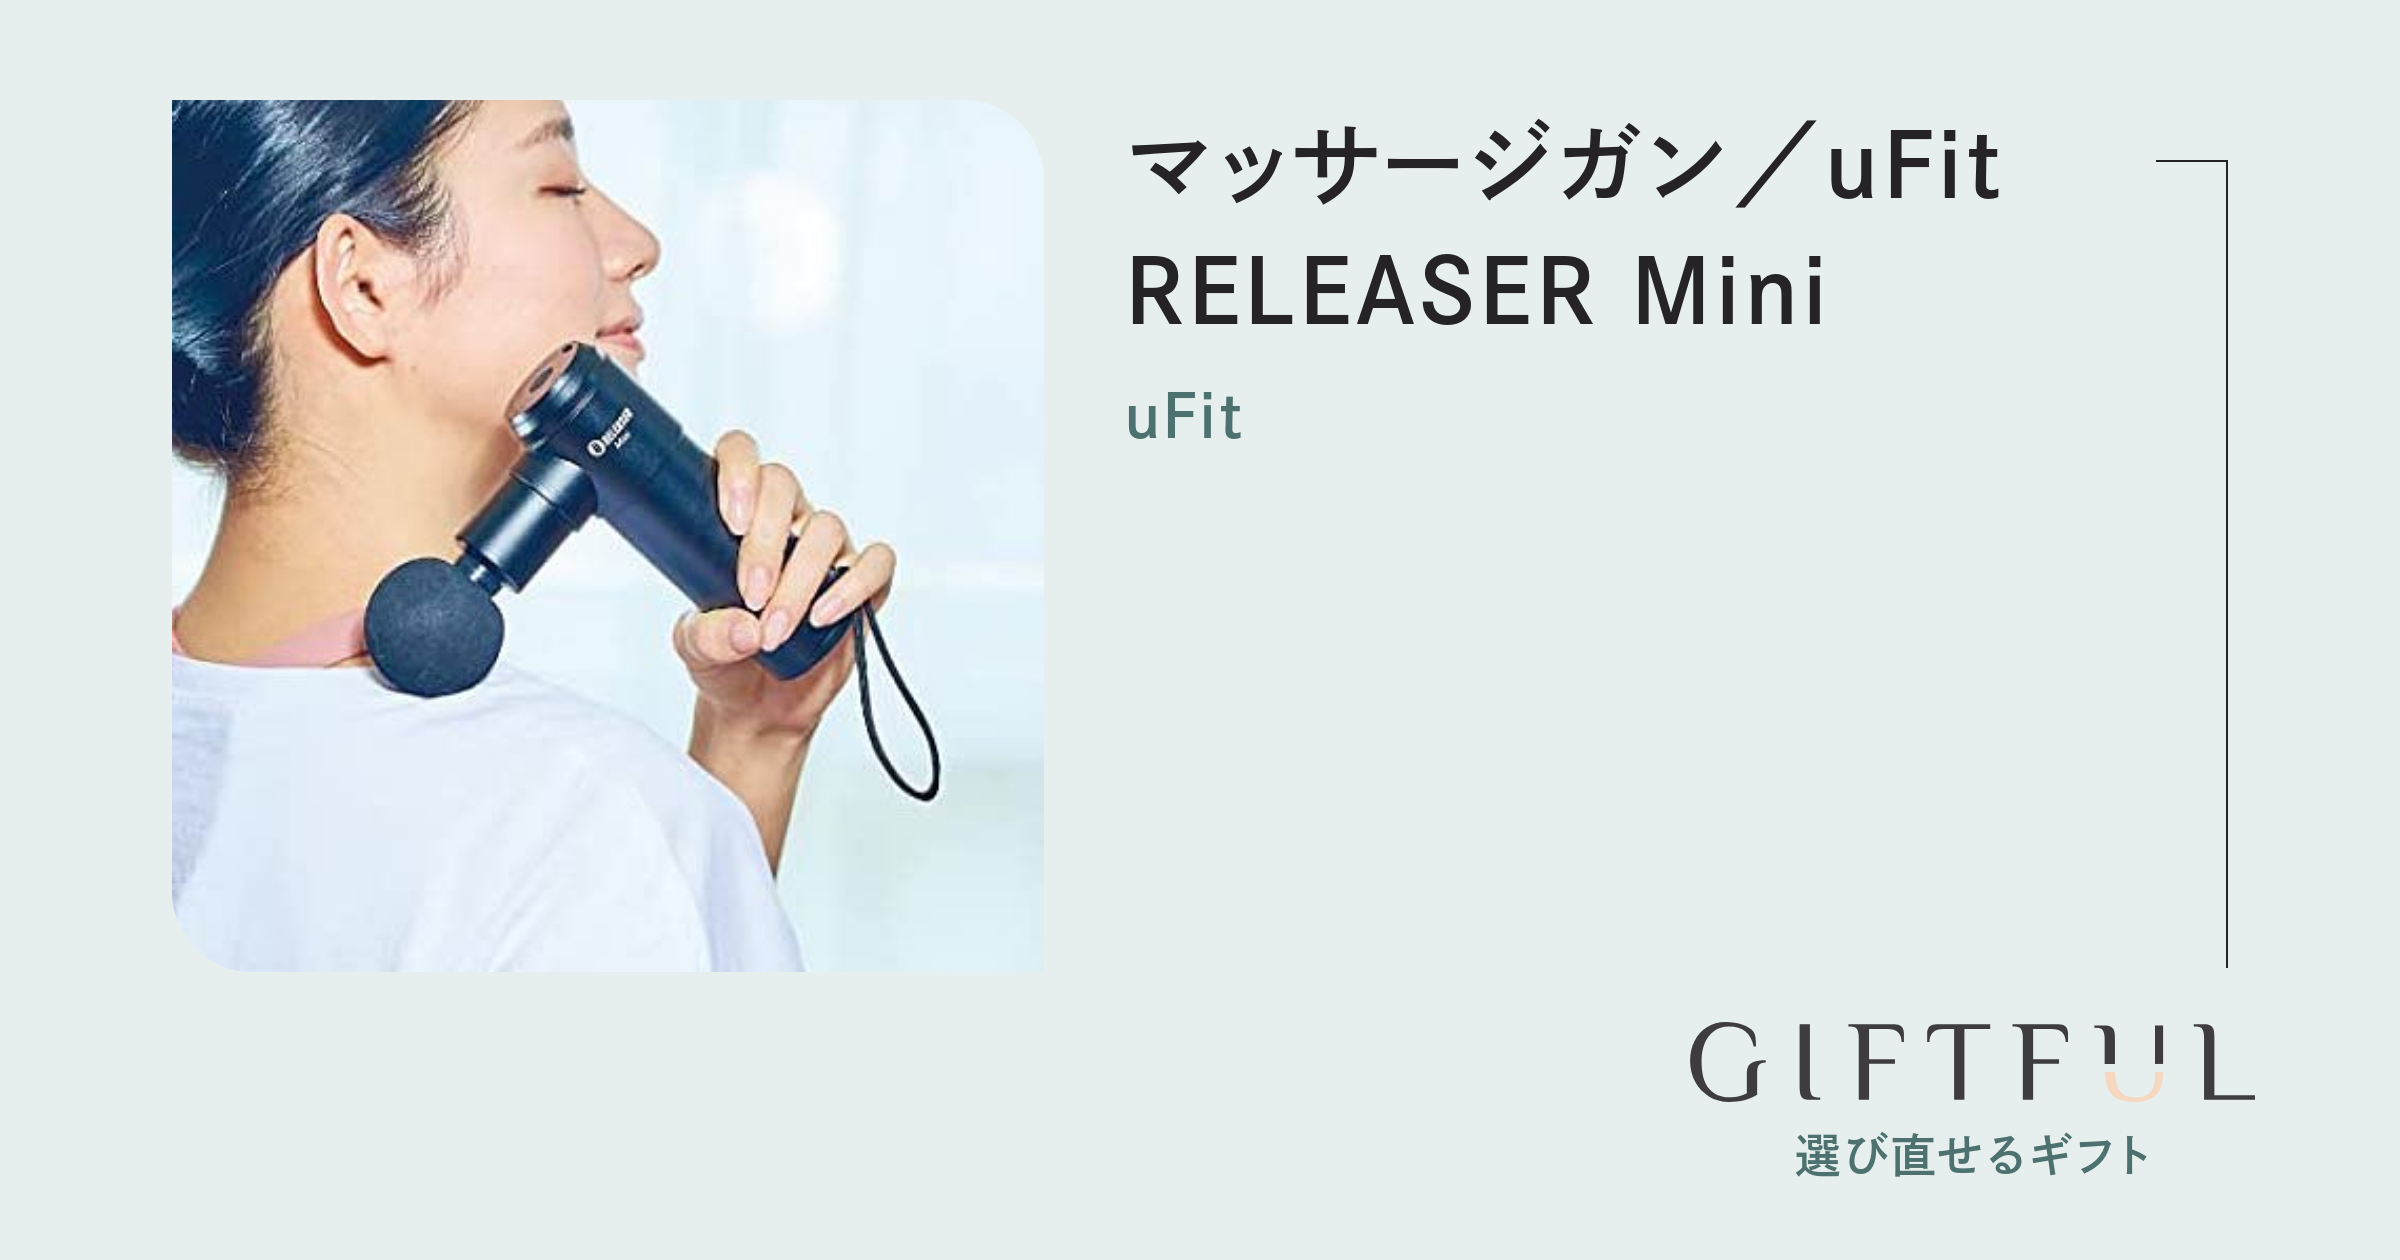 マッサージガン／uFit RELEASER Mini | uFit (ユーフィット) のギフト 